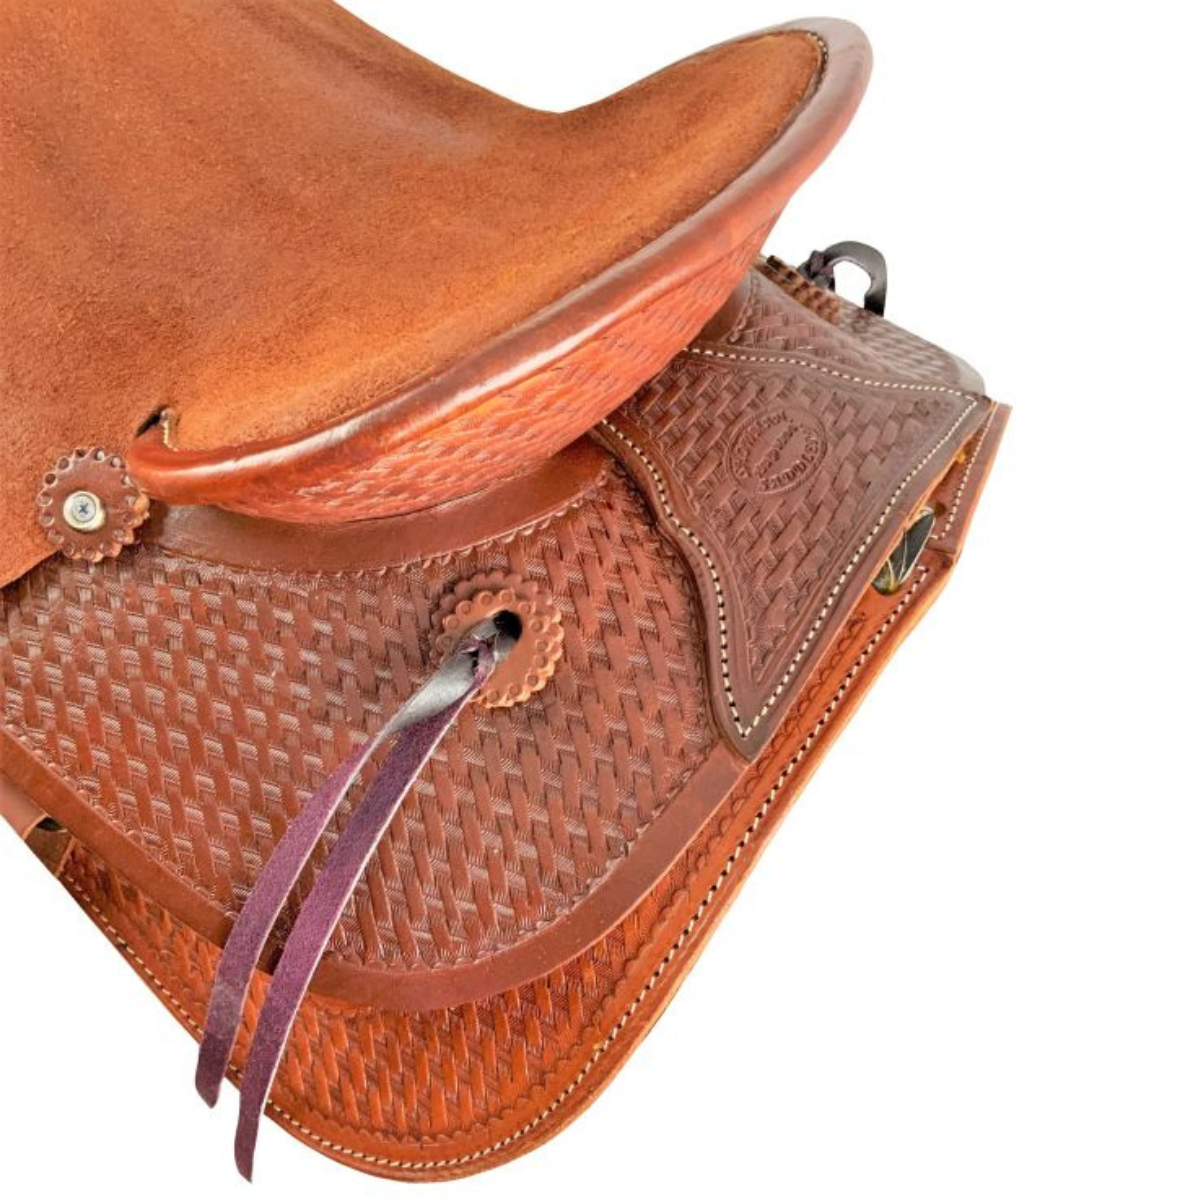 17" Showman ® Hard seat roper saddle - Double T Saddles